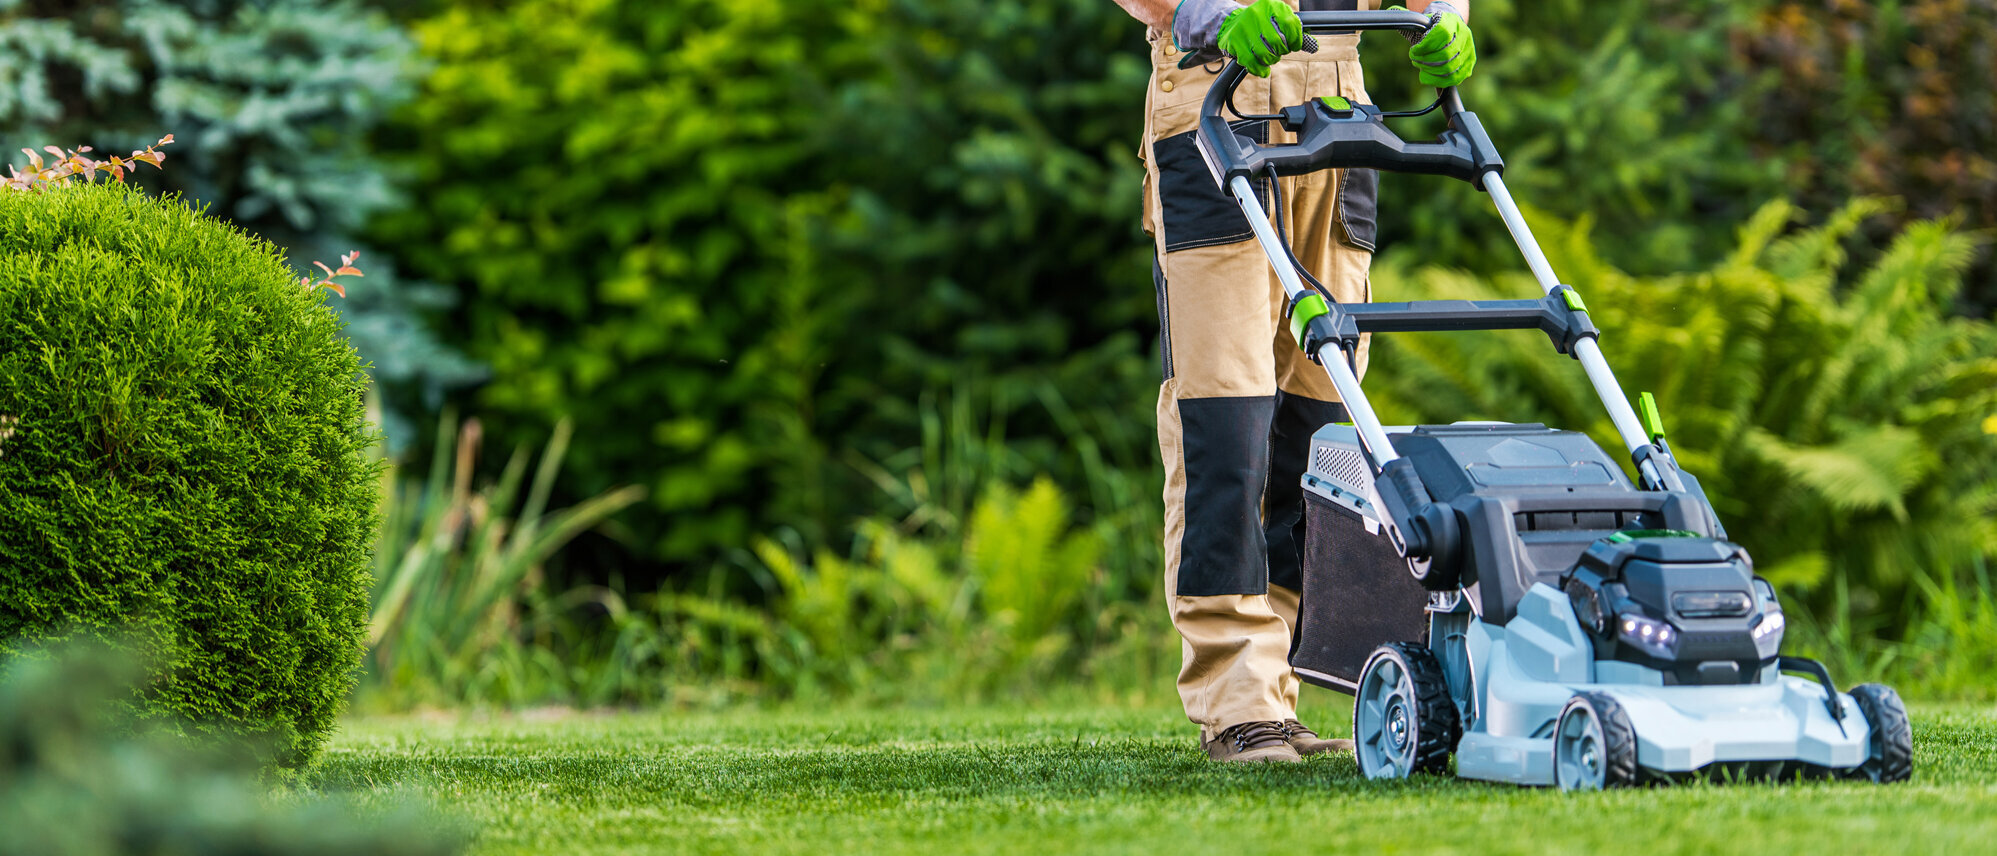 Durch eine Schutzausrüstung könne beim Rasenmähen Verletzungen verhindert werden